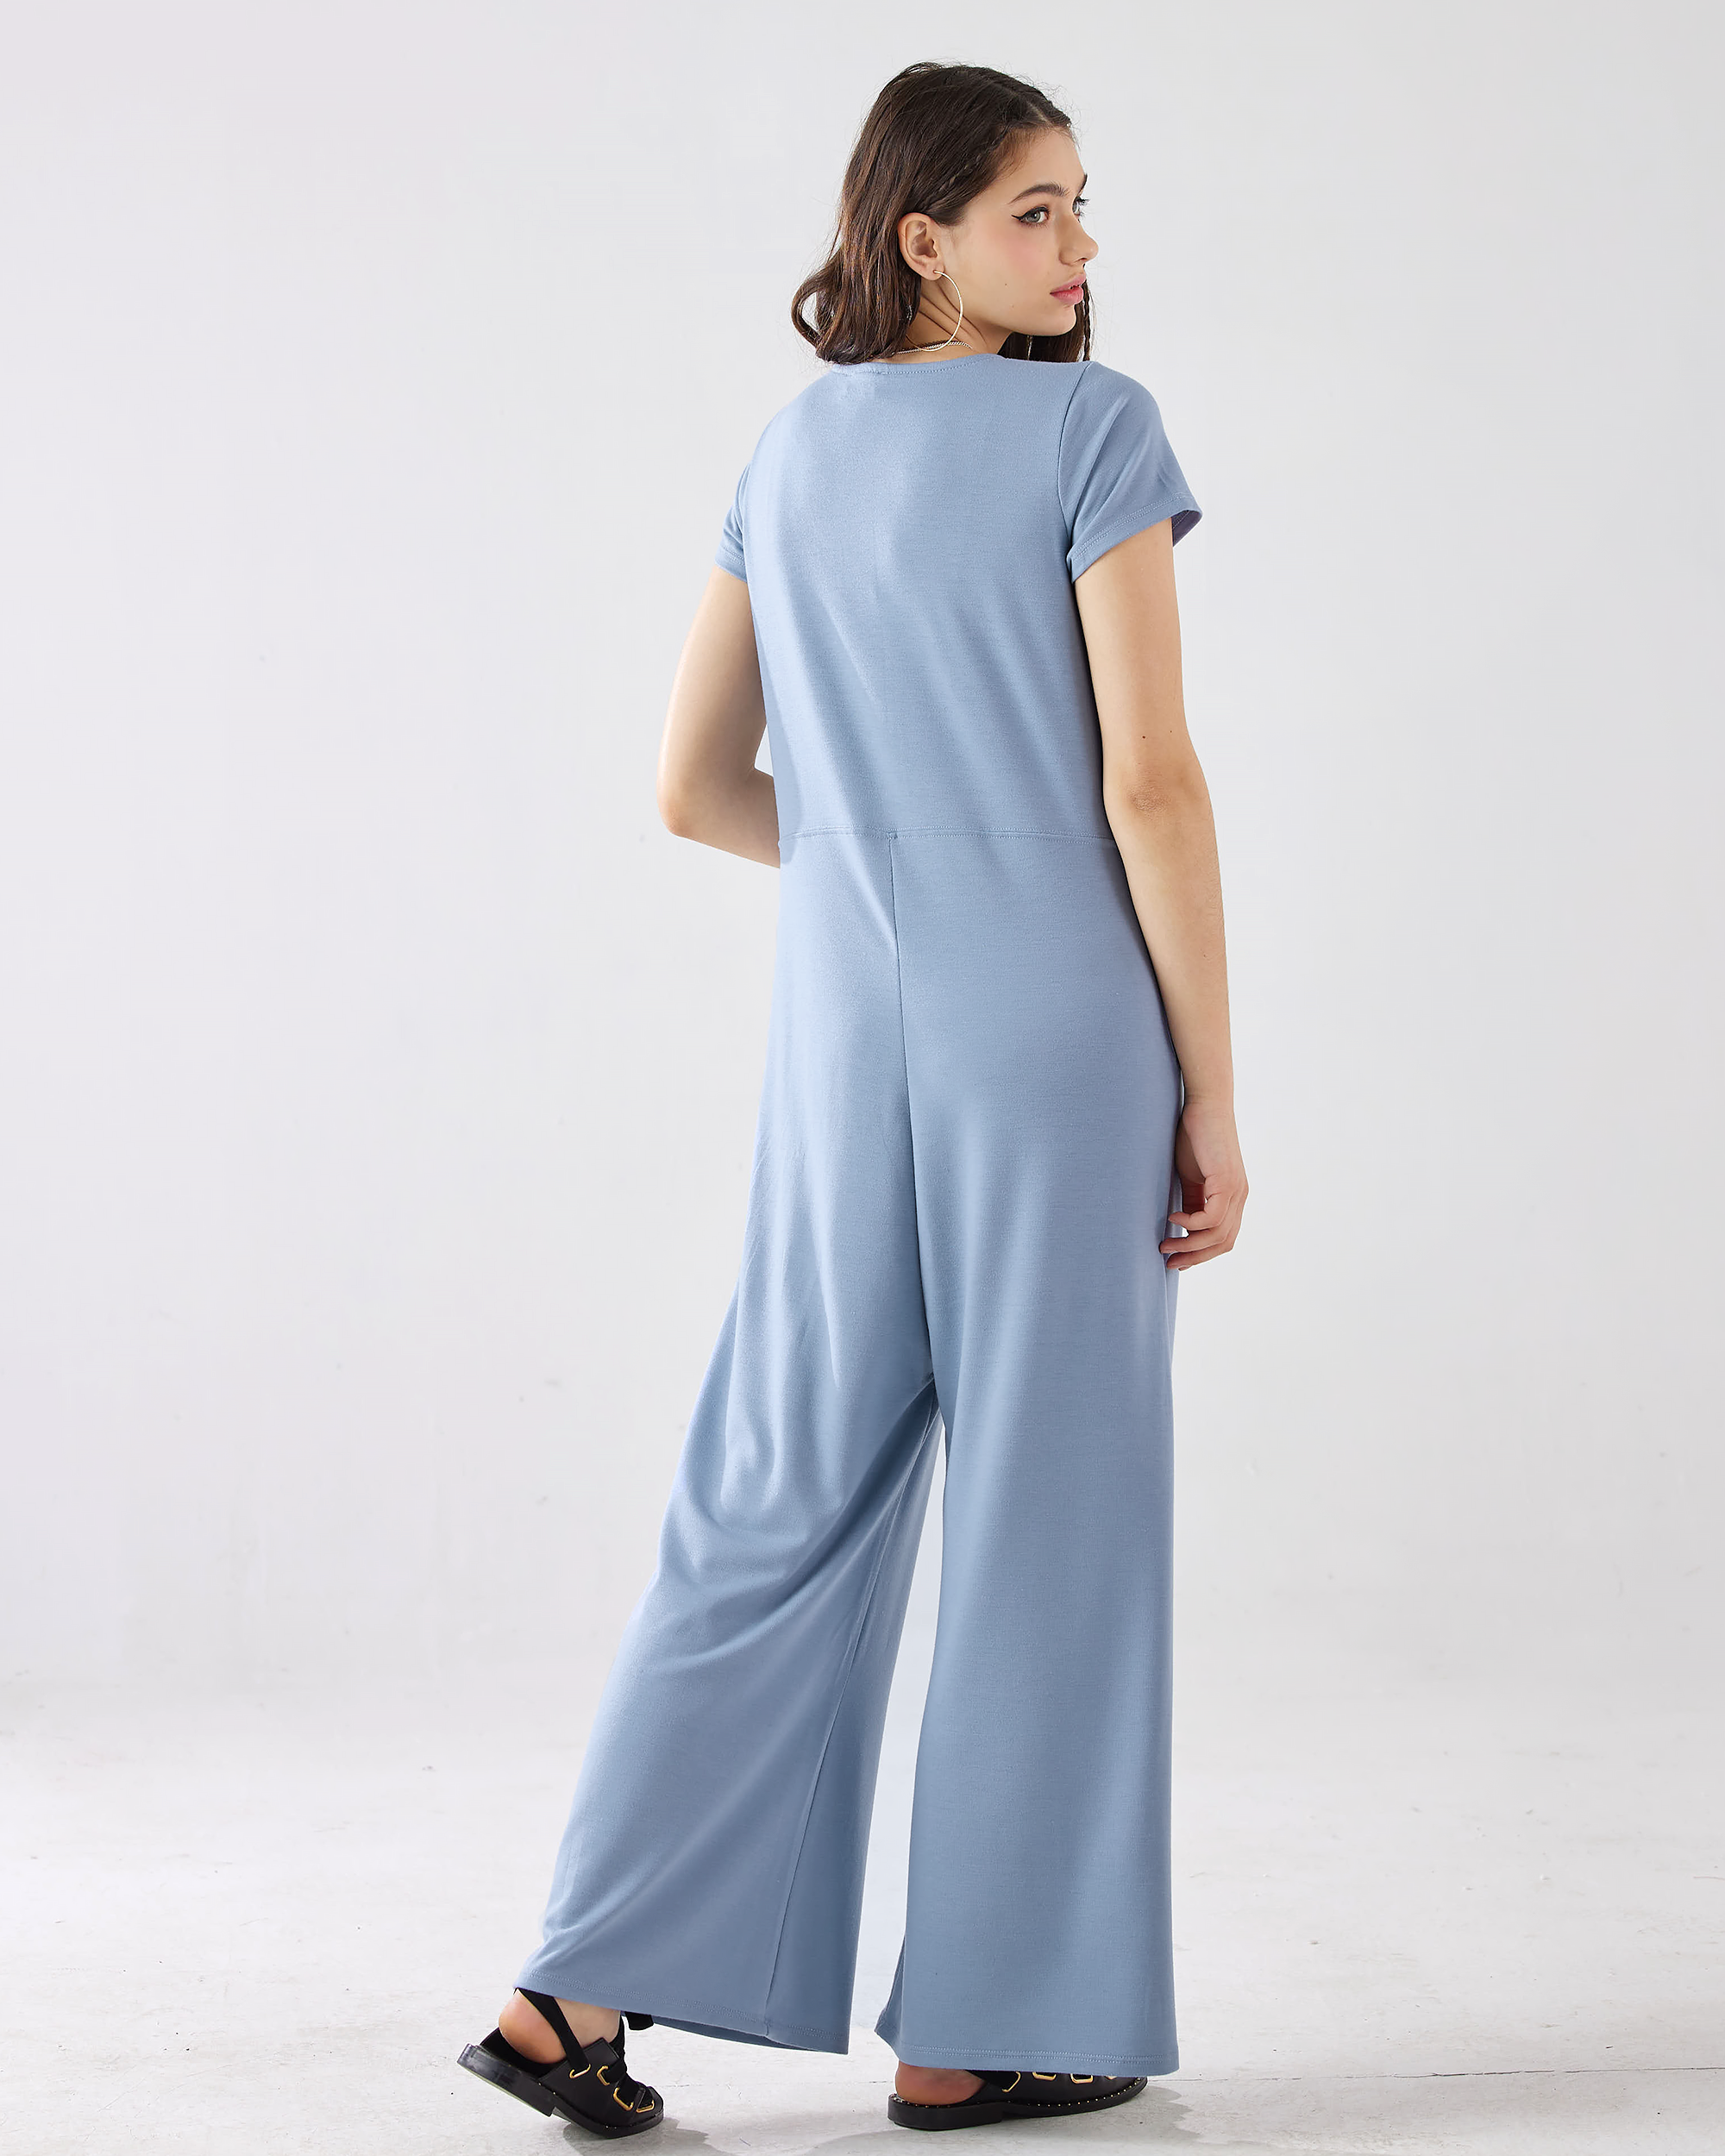 Dream Blue Jumpsuit: Button-Up Elegance